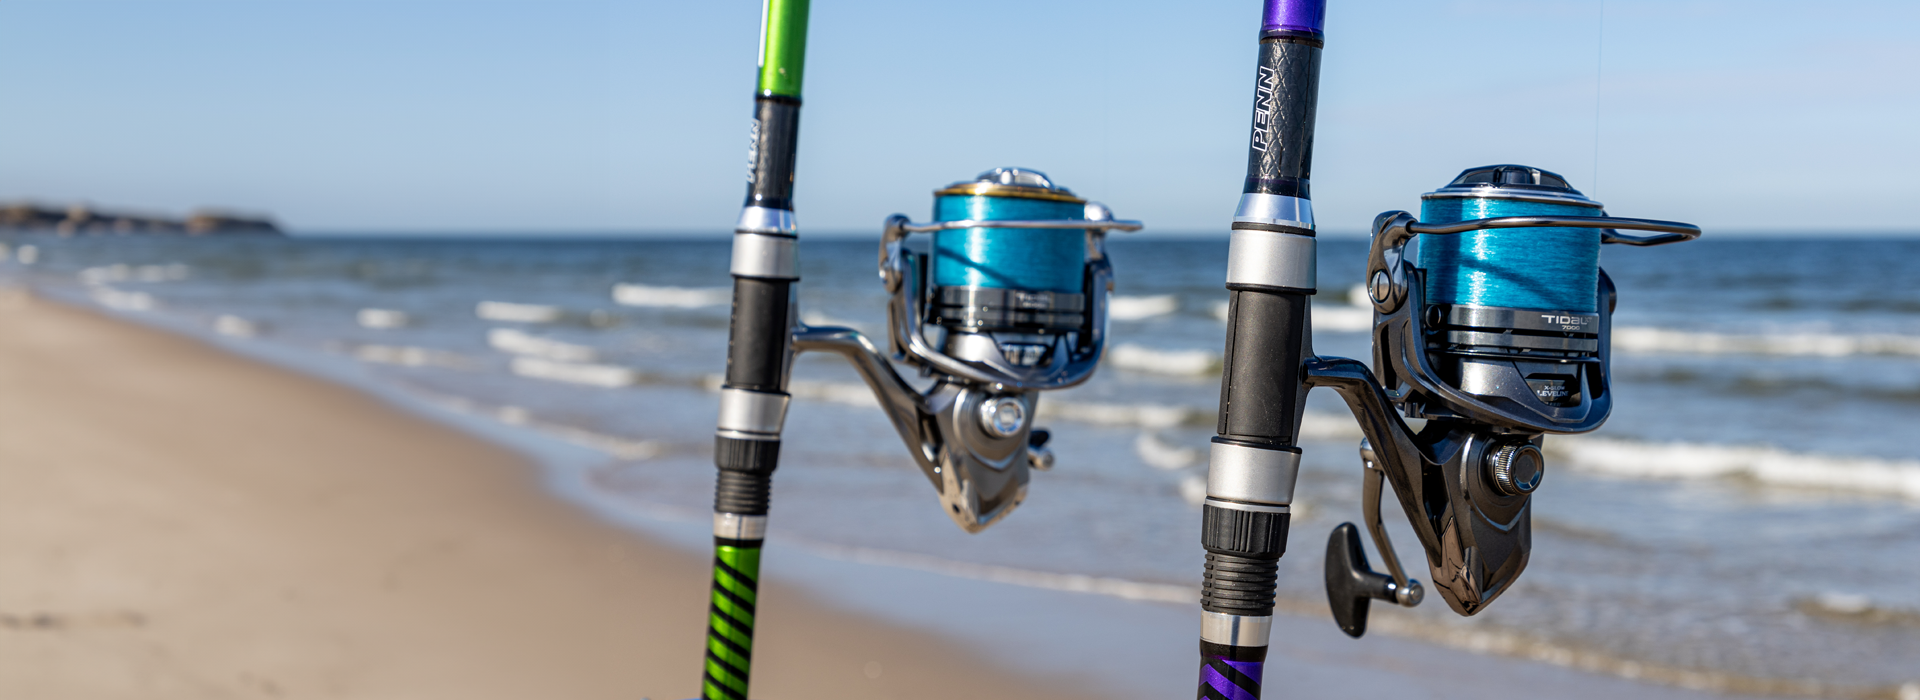 PENN® EU Saltwater Fishing Gear, Fishing Tackle & Supplies